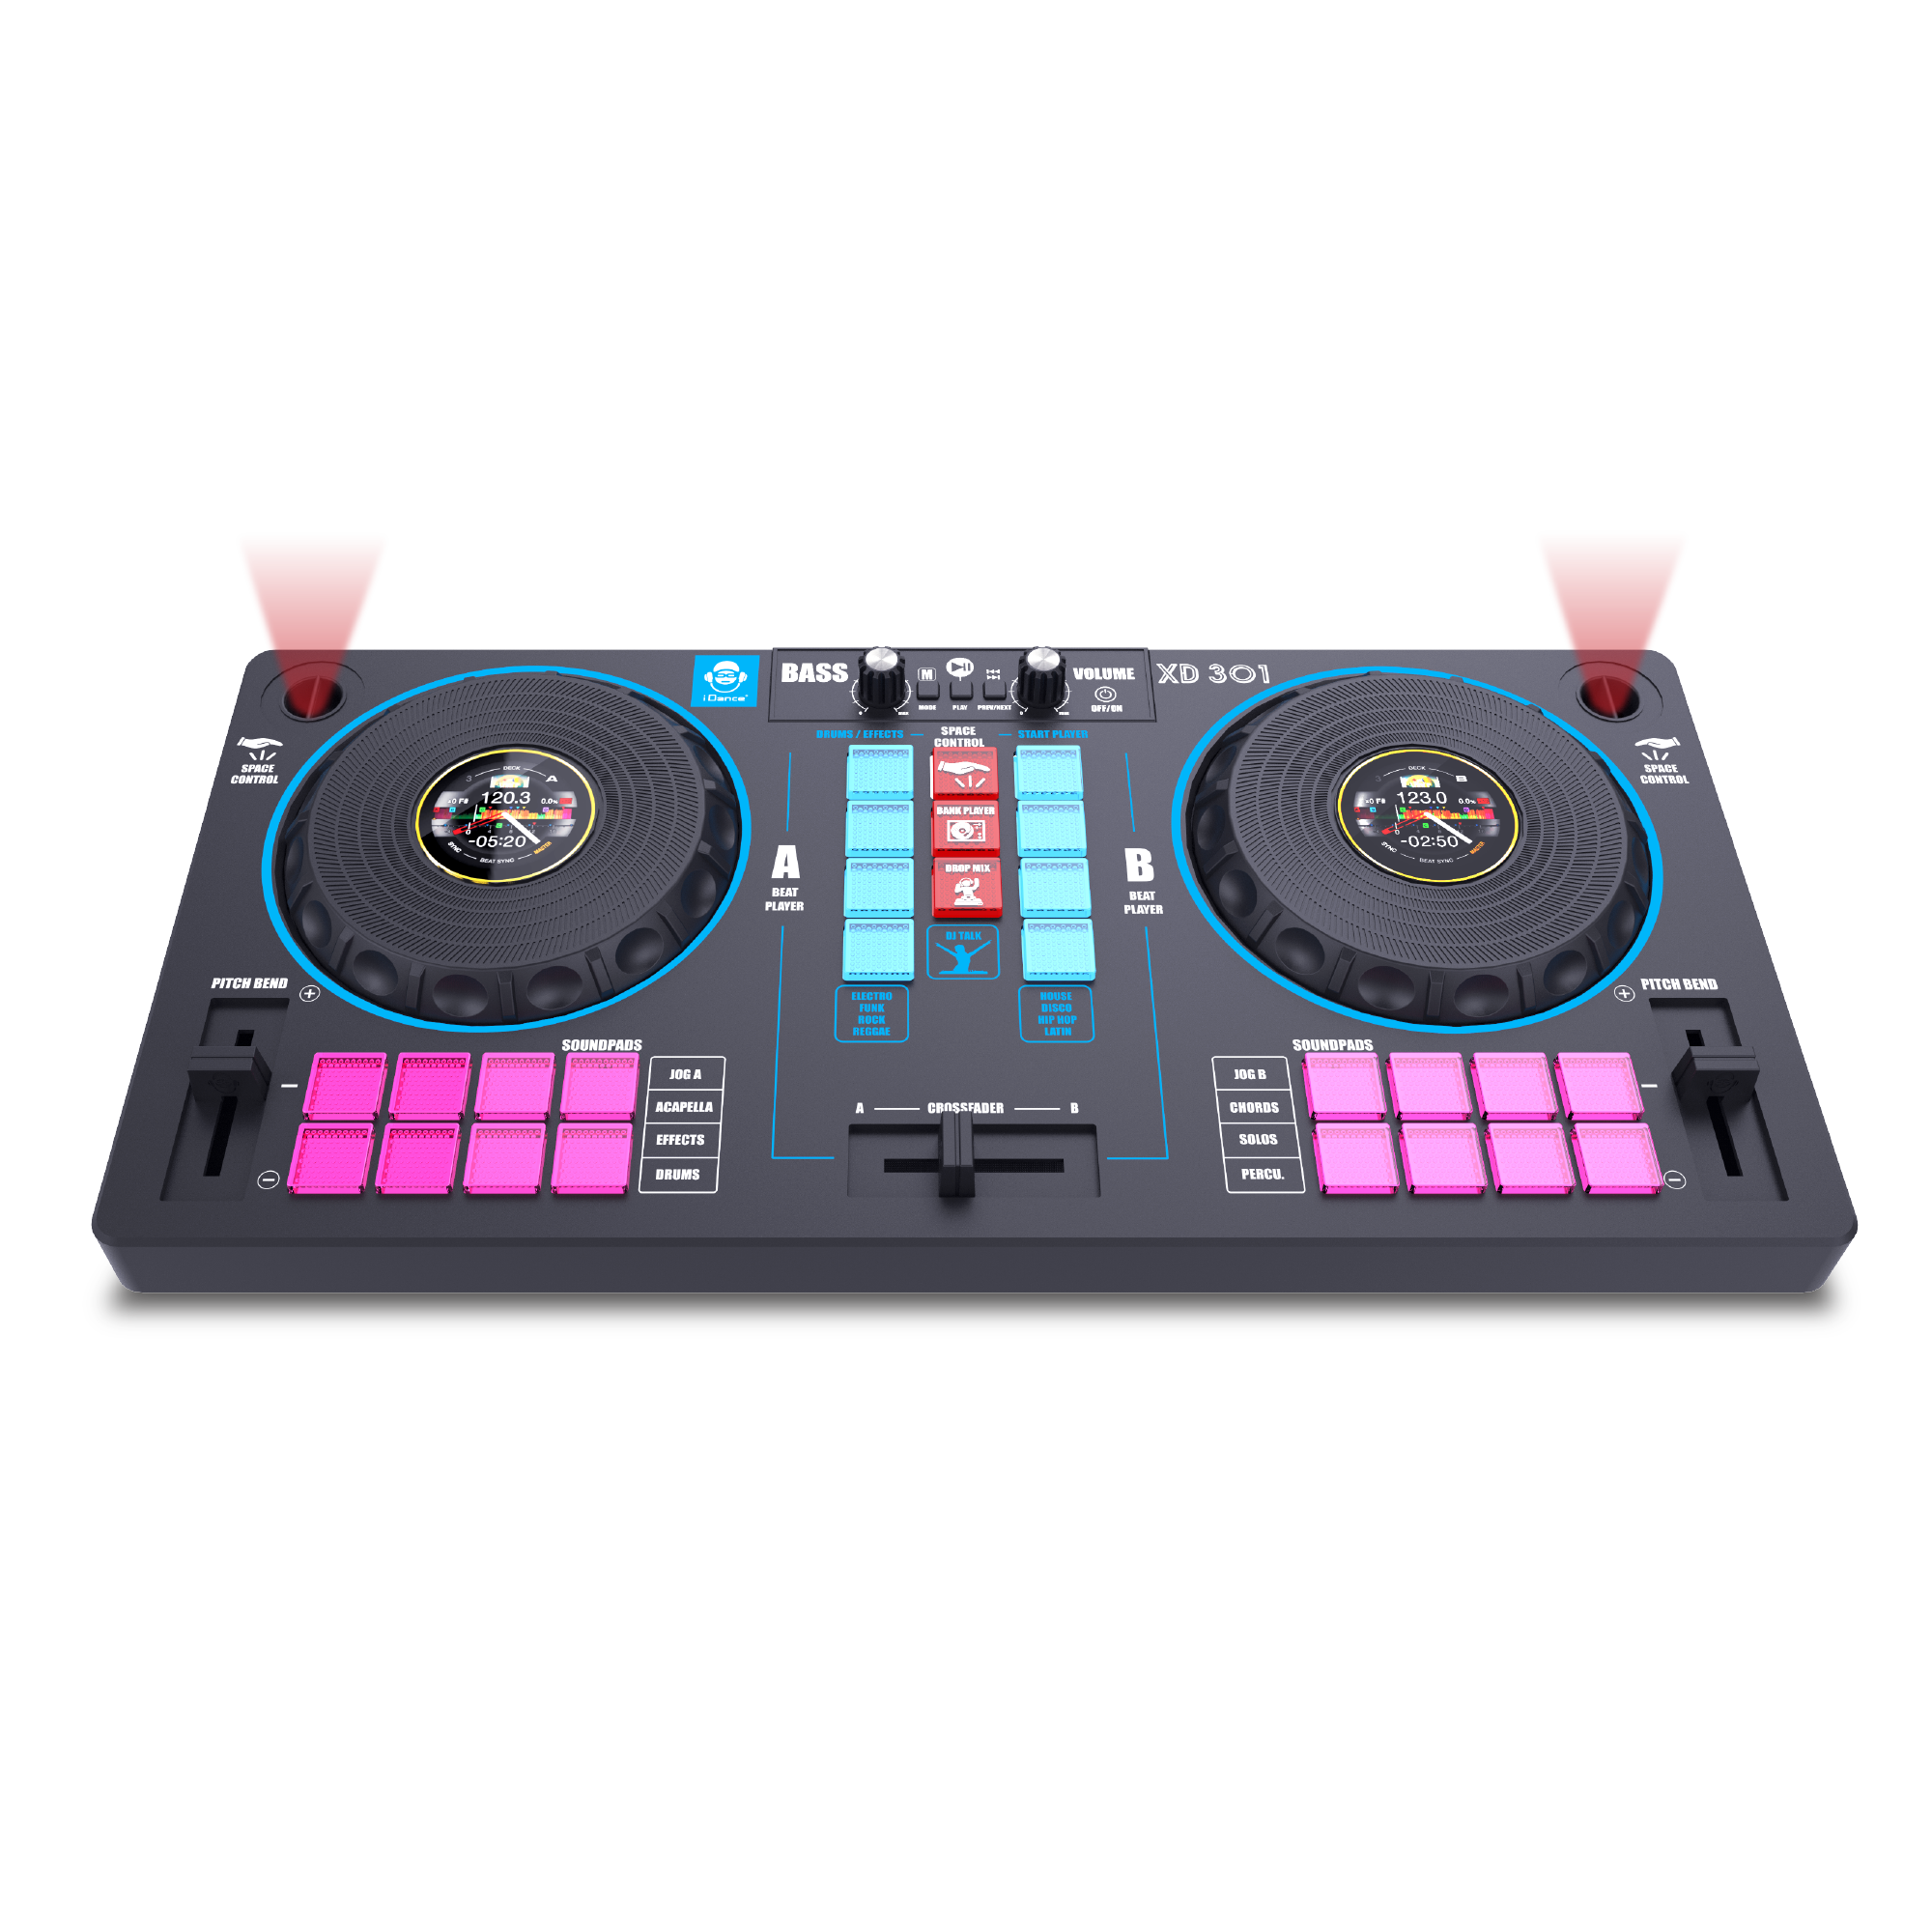 Station mixer 14in1 - diventa il re della festa con la console dj: mixer e remixer con 16 loop audio, collegamento a dispositivi, 2 giradischi con scratch, bass booster e effetti sonori - goditi un'esperienza di mixaggio unica! - SUPERSTAR